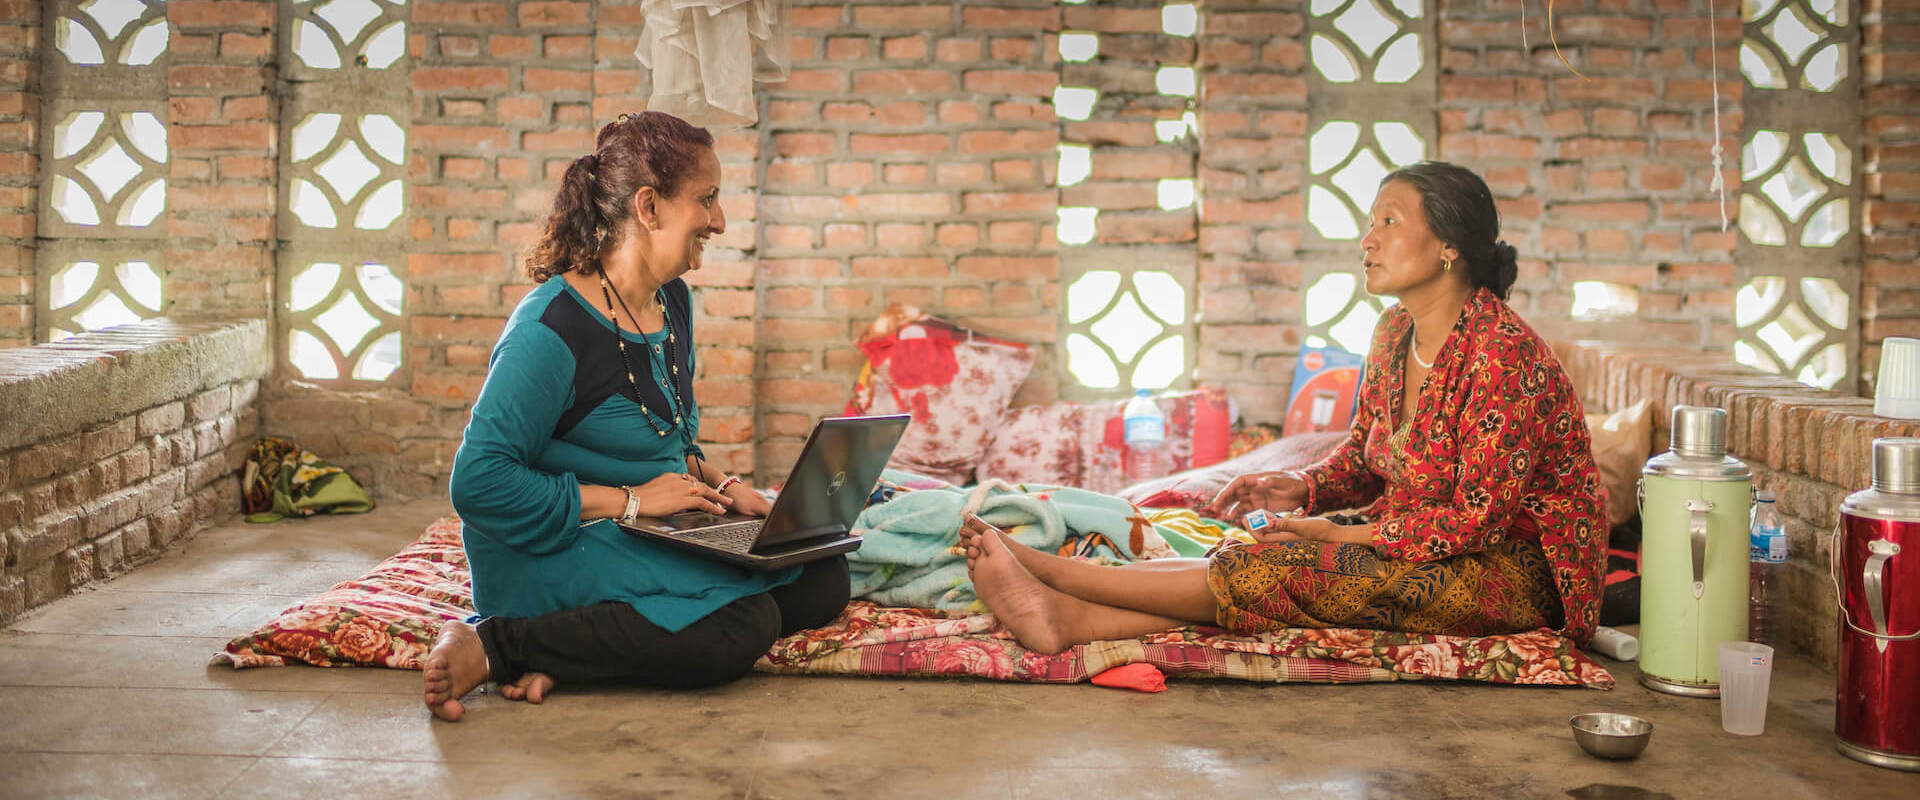 Sujata Sharma Poudel, consejera psicosocial, habla con una mujer local en el Centro de Rehabilitación de Mujeres en Panchkhal Nepal. Tras el terremoto de 2015, Ashmita Tamang, consejera psicosocial de distrito del Centro para Víctimas de la Tortura con sede en Nepal, reiteró el aumento del número de casos de violencia doméstica y sexual.